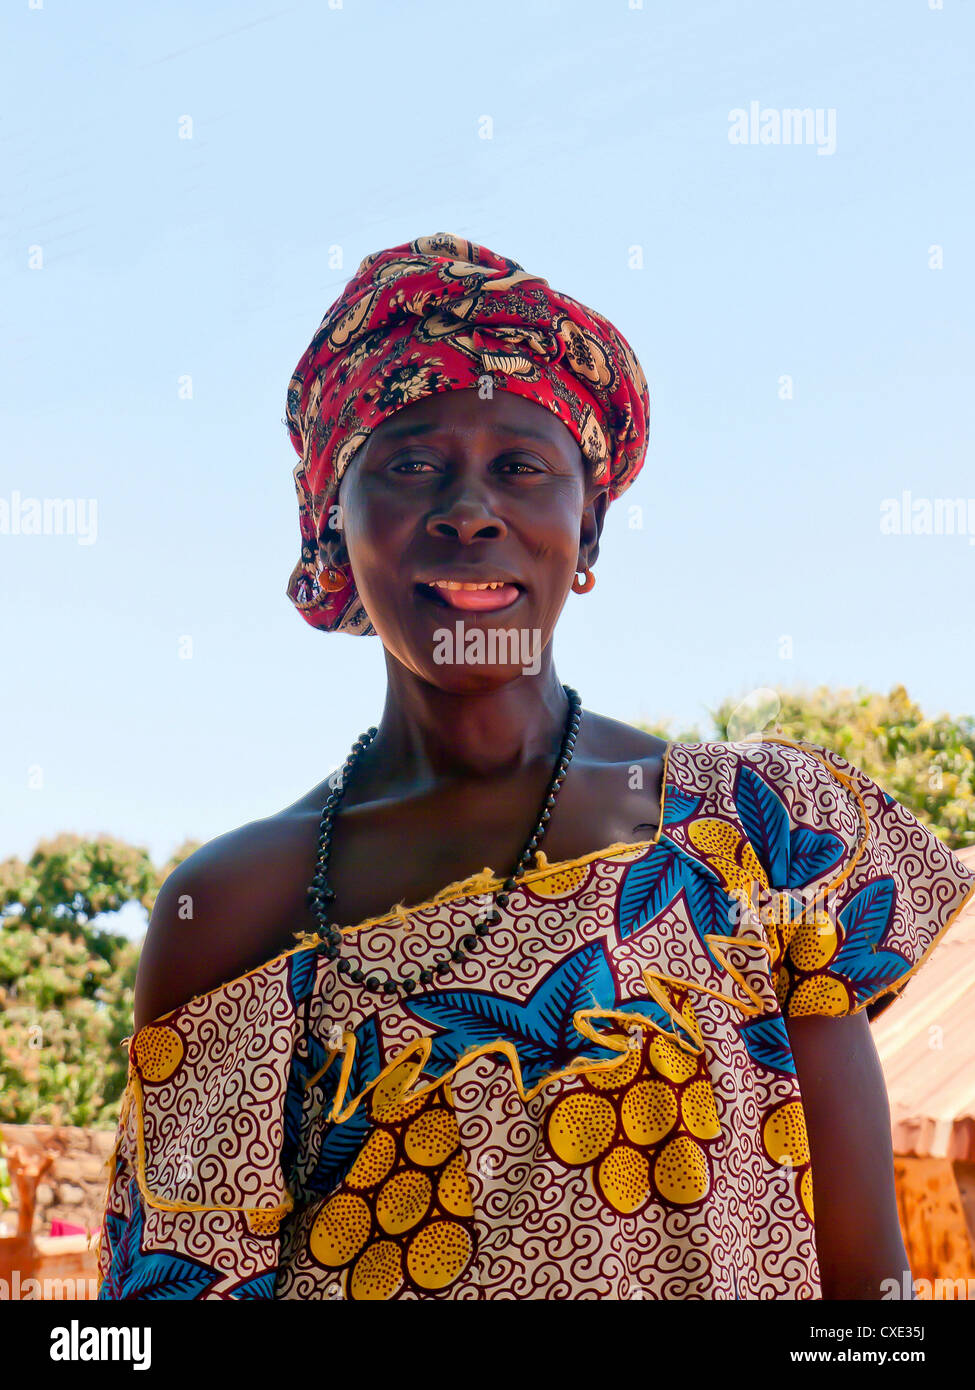 Bunten lokalen Dame in Tracht der Insel von Albreda, Gambia Stockfoto